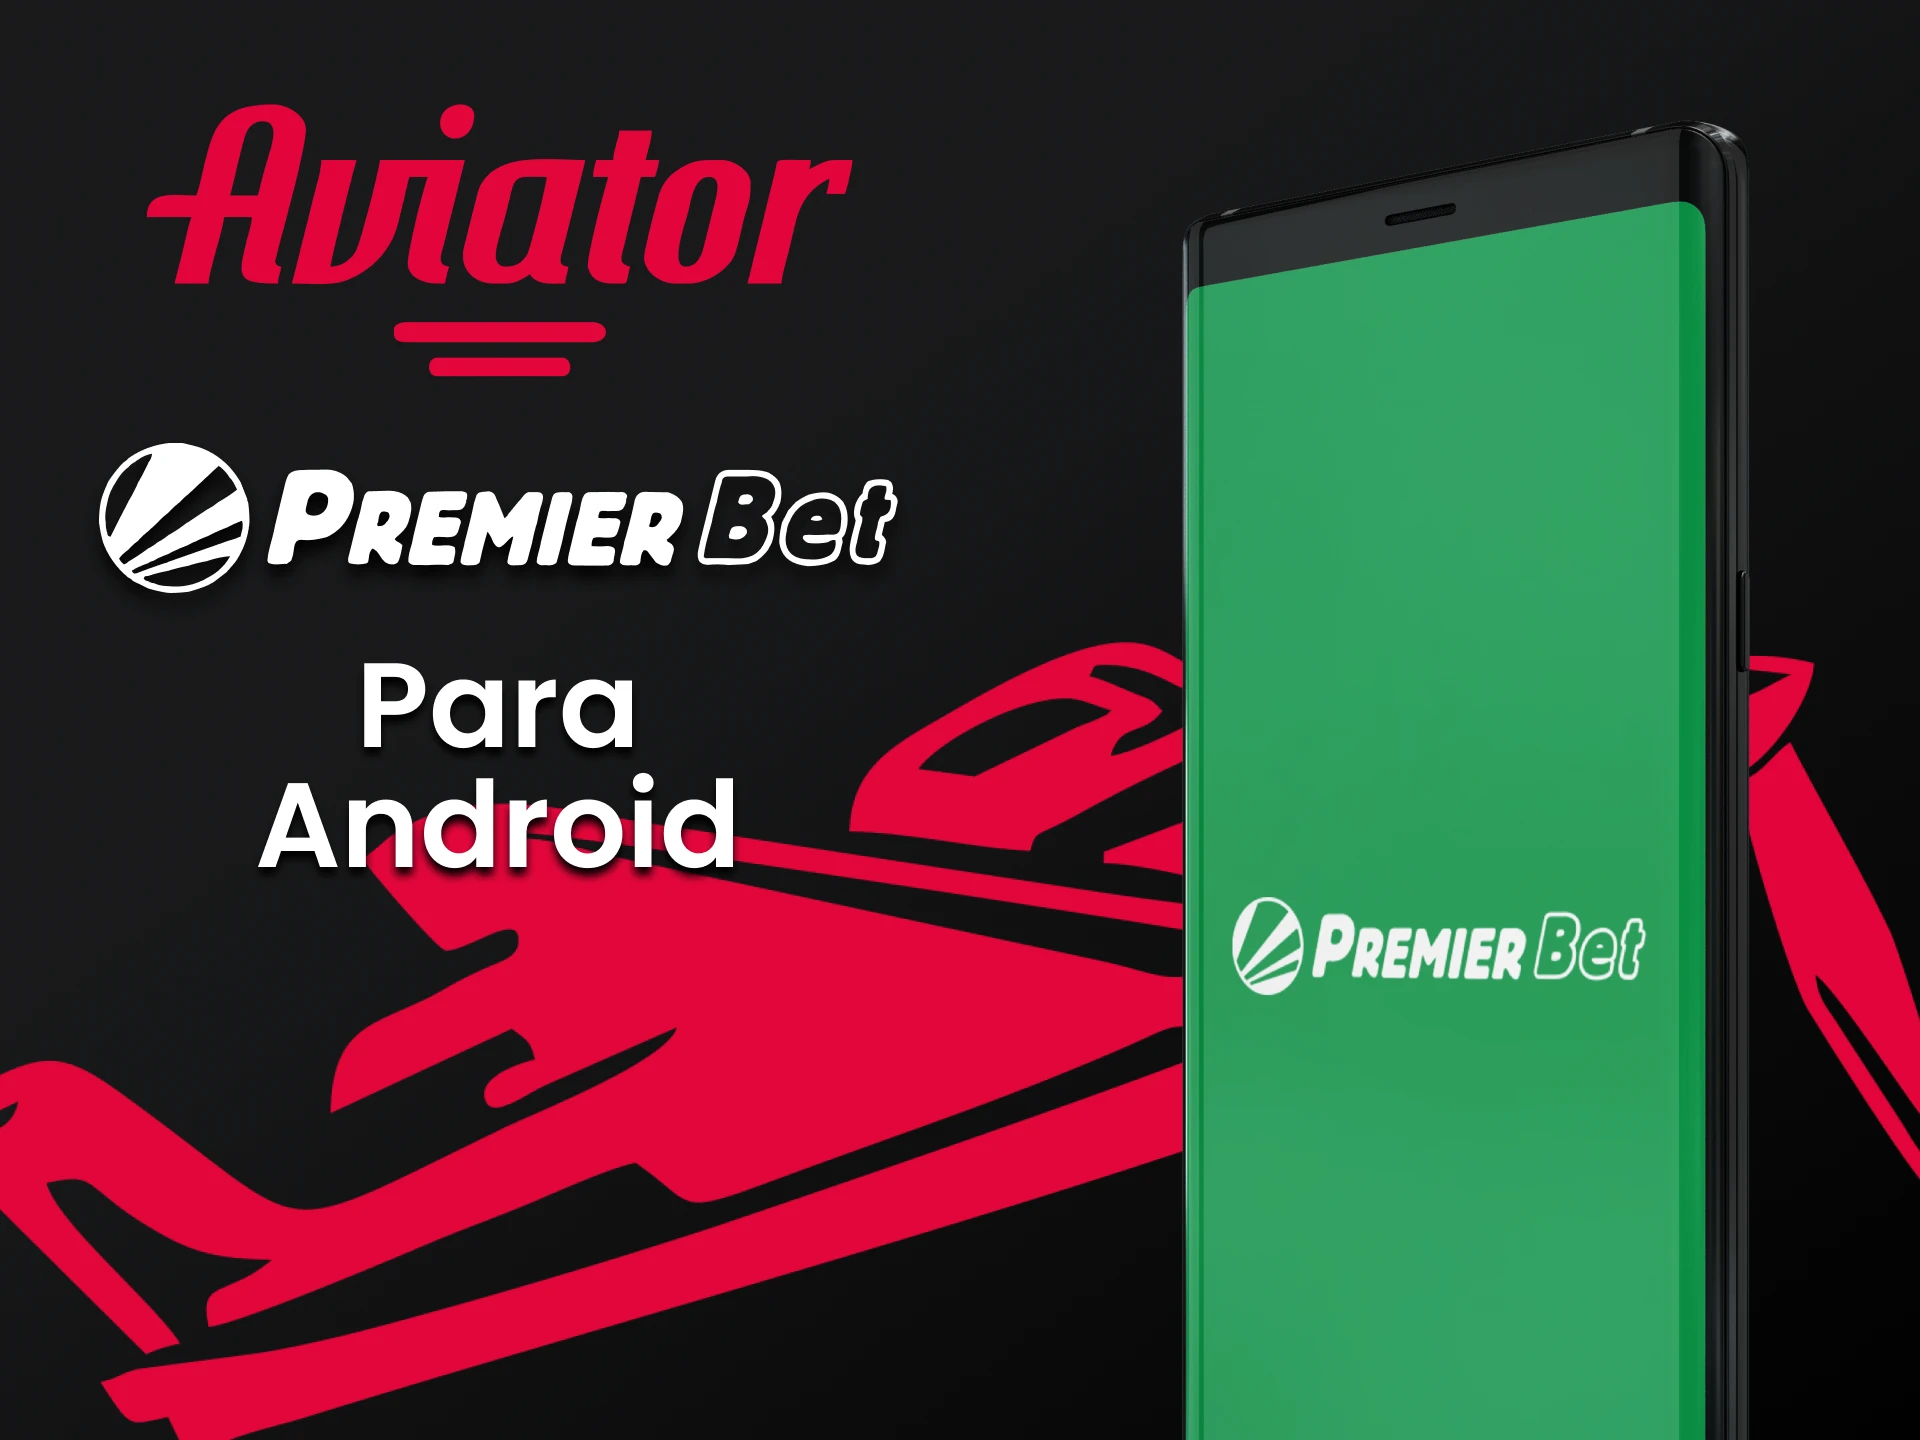 Instale o aplicativo Premierbet para jogar Aviator no Android.